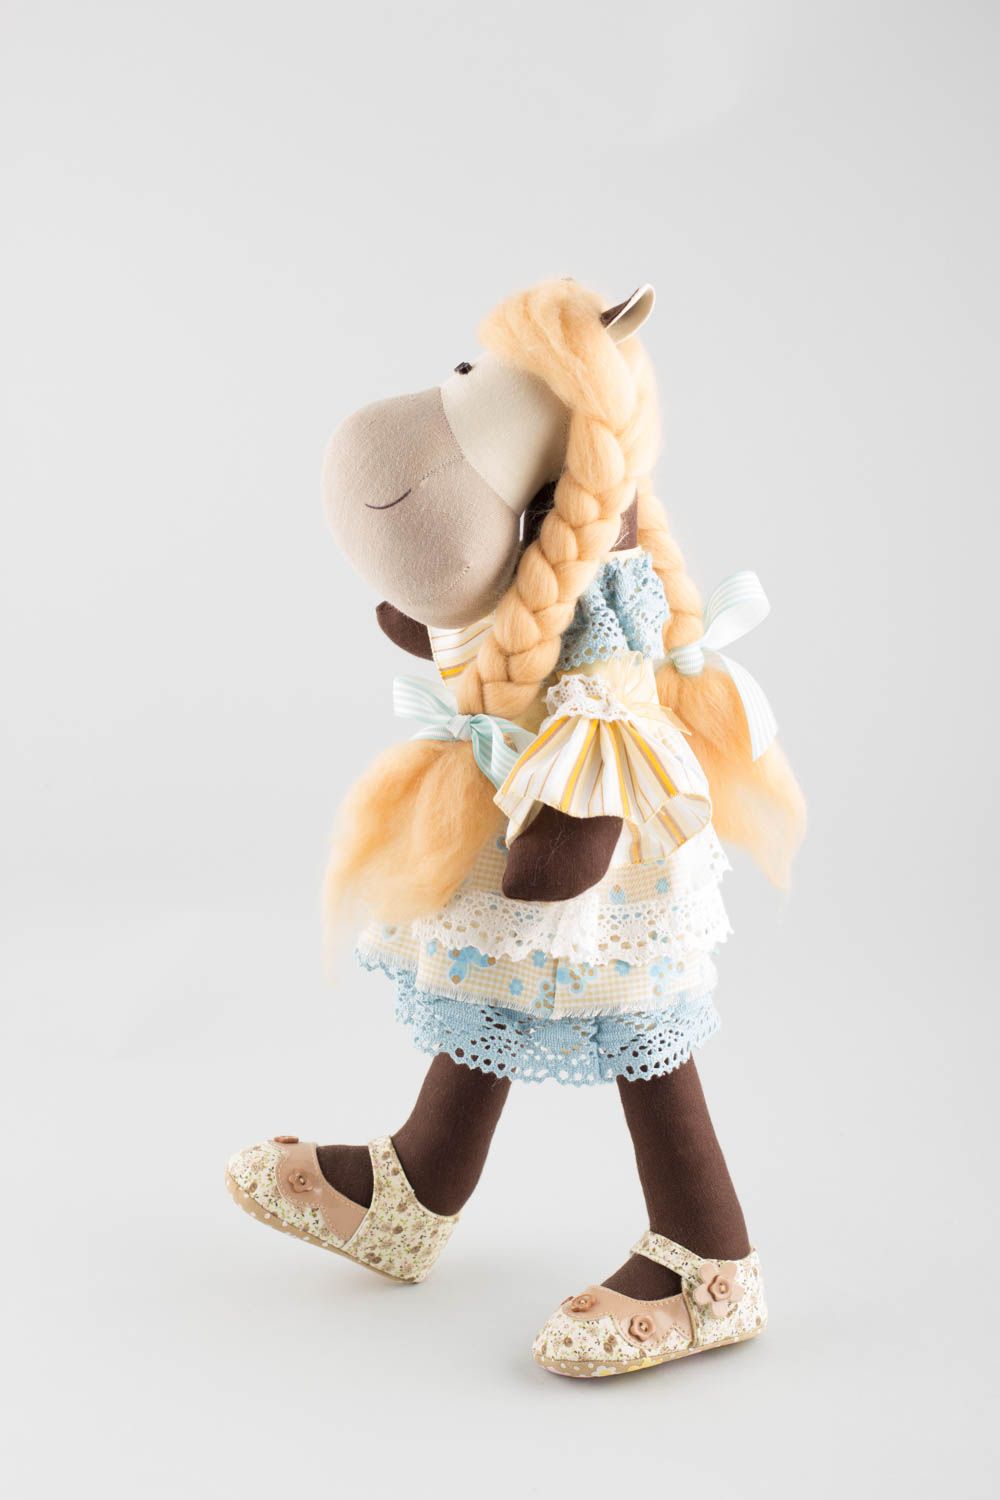 Handmade Stofftier Pferd in Kleidung aus Leinen und Baumwolle für Kind und Dekor foto 3